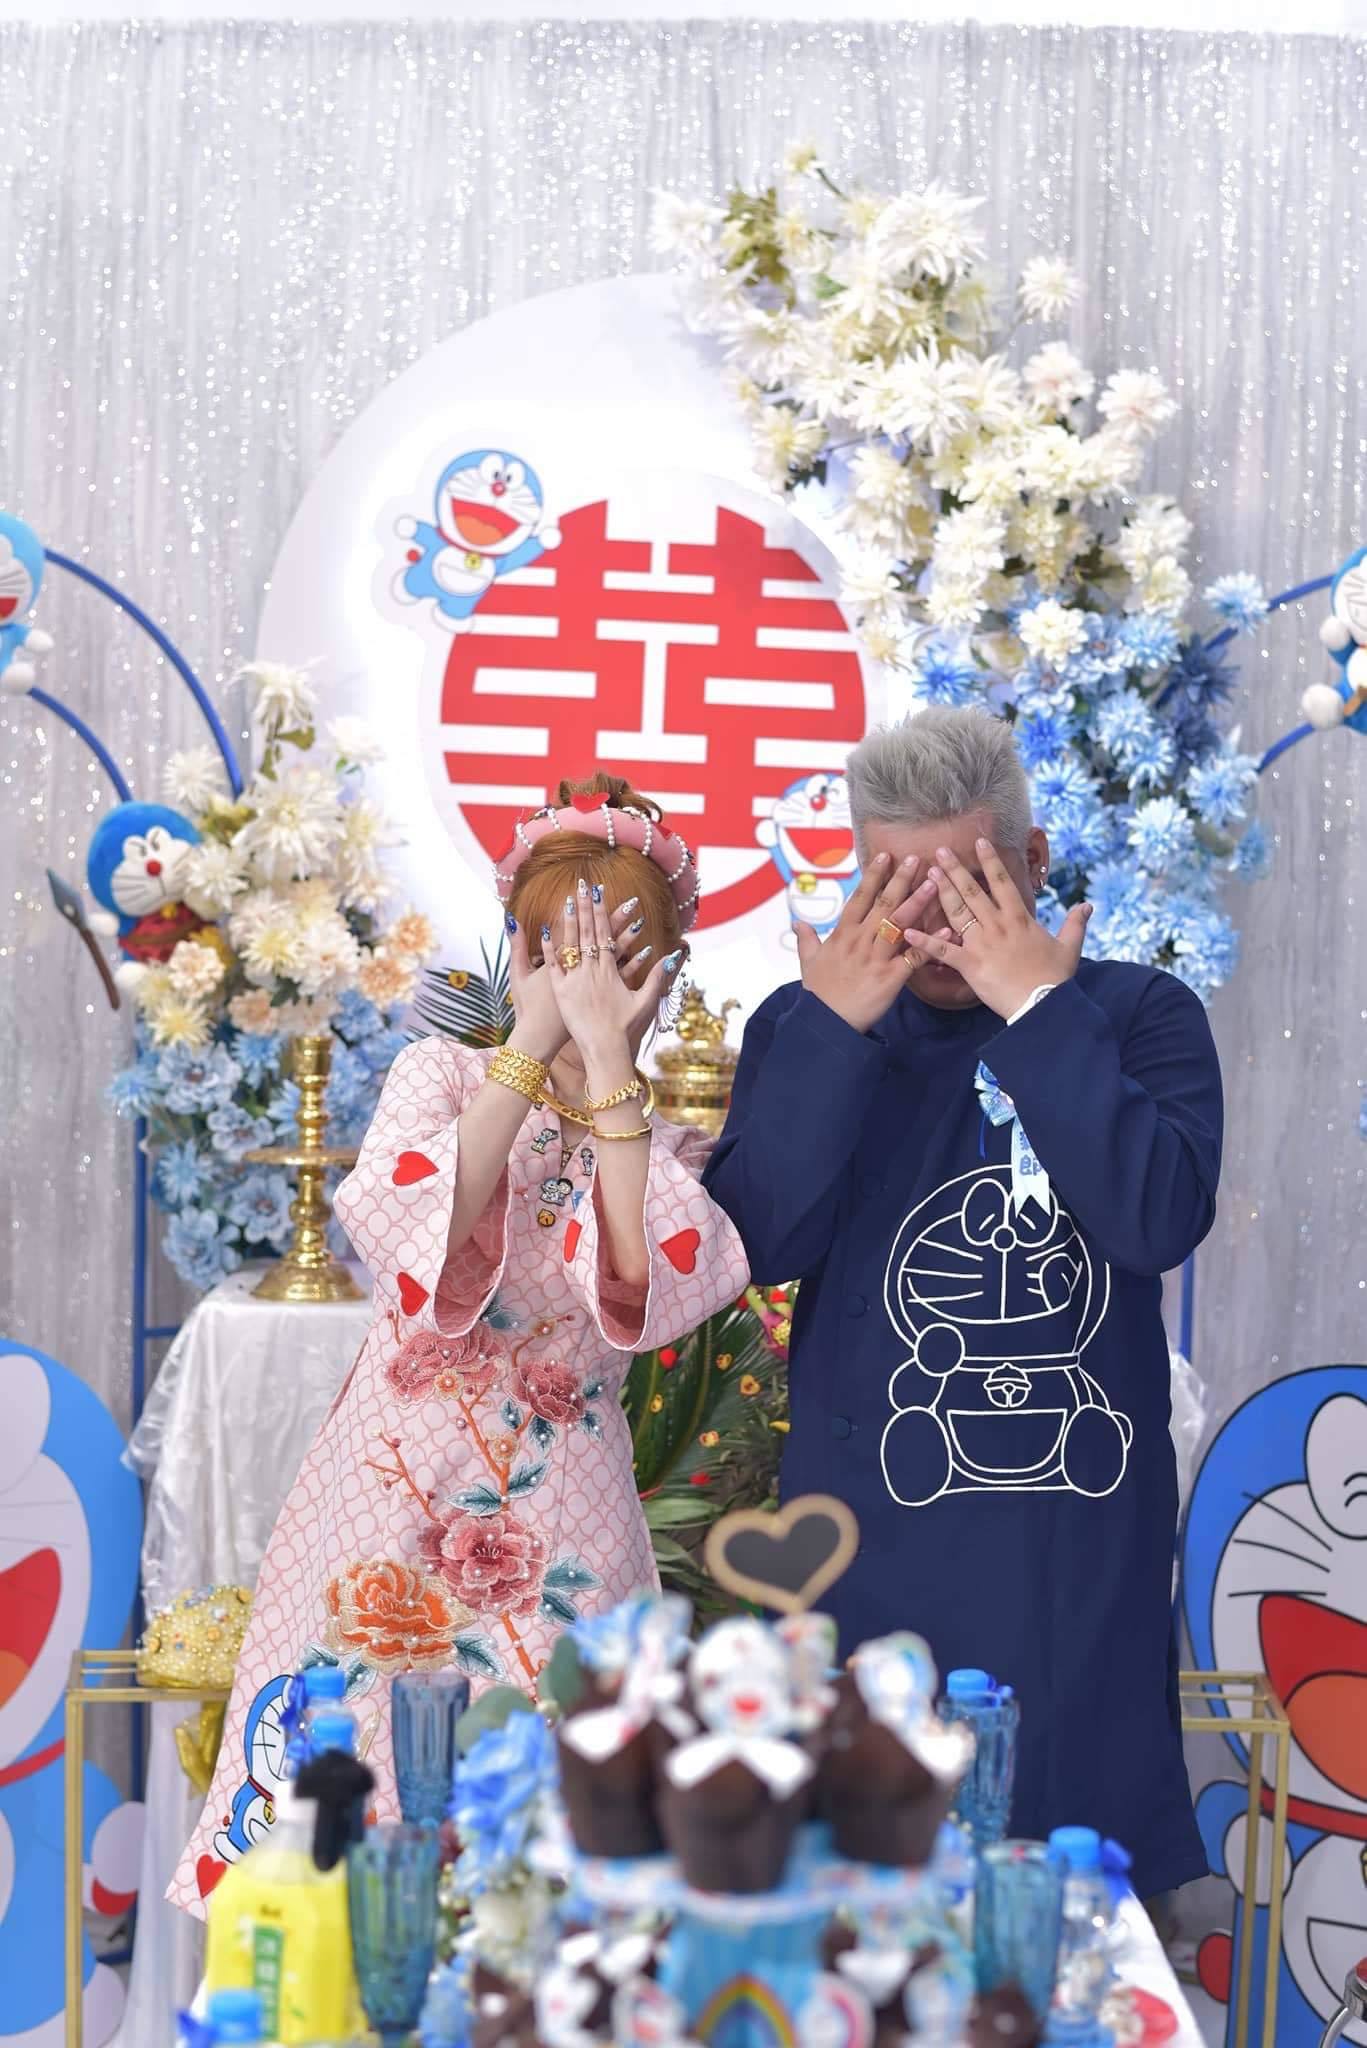 Đám cưới đặc biệt của cặp đôi 'fan cuồng' truyện tranh Doraemon